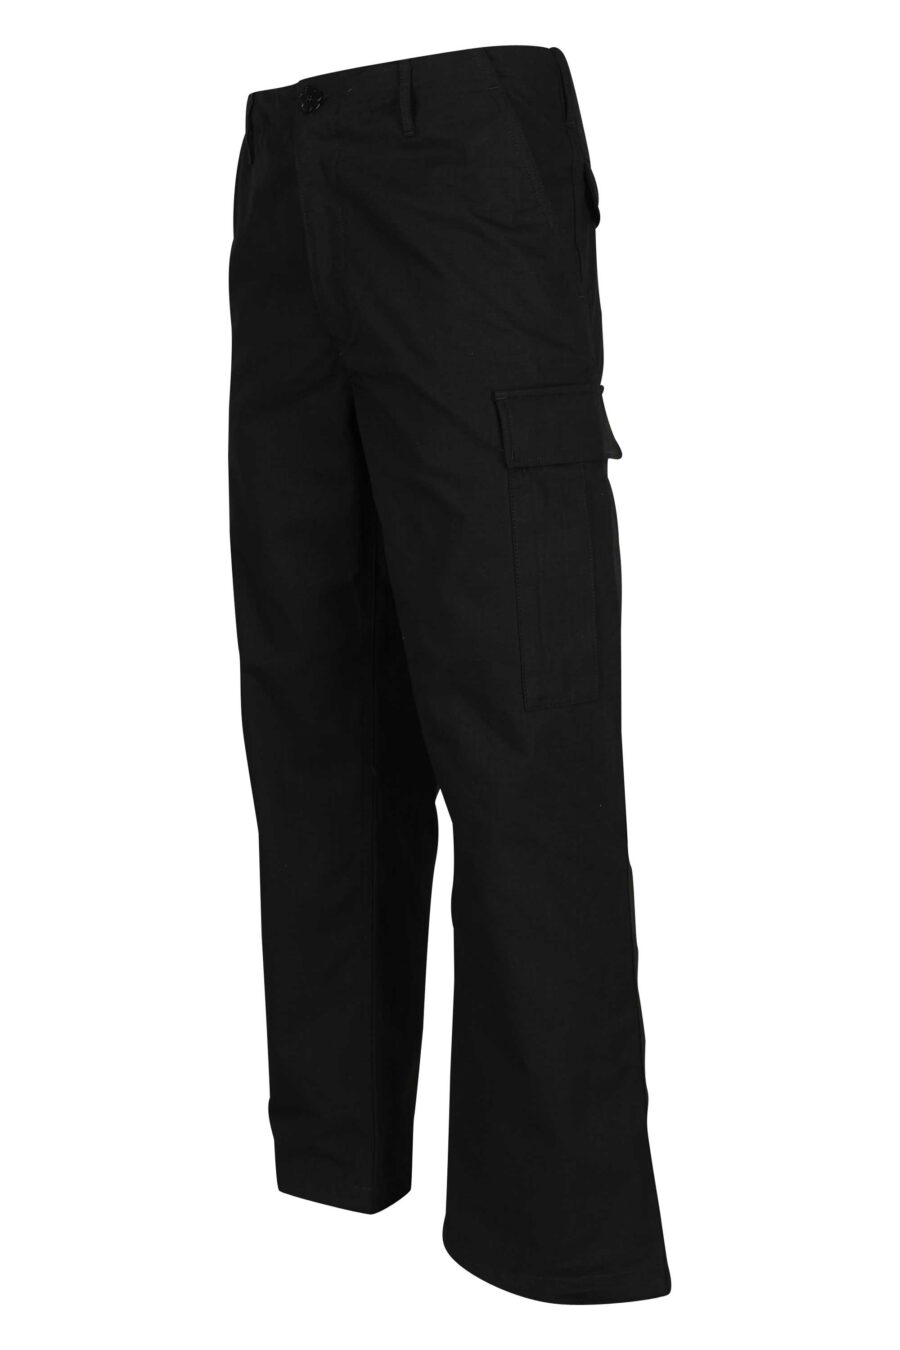 Pantalón negro estilo cargo con logo "boke flower" - 3612230618855 1